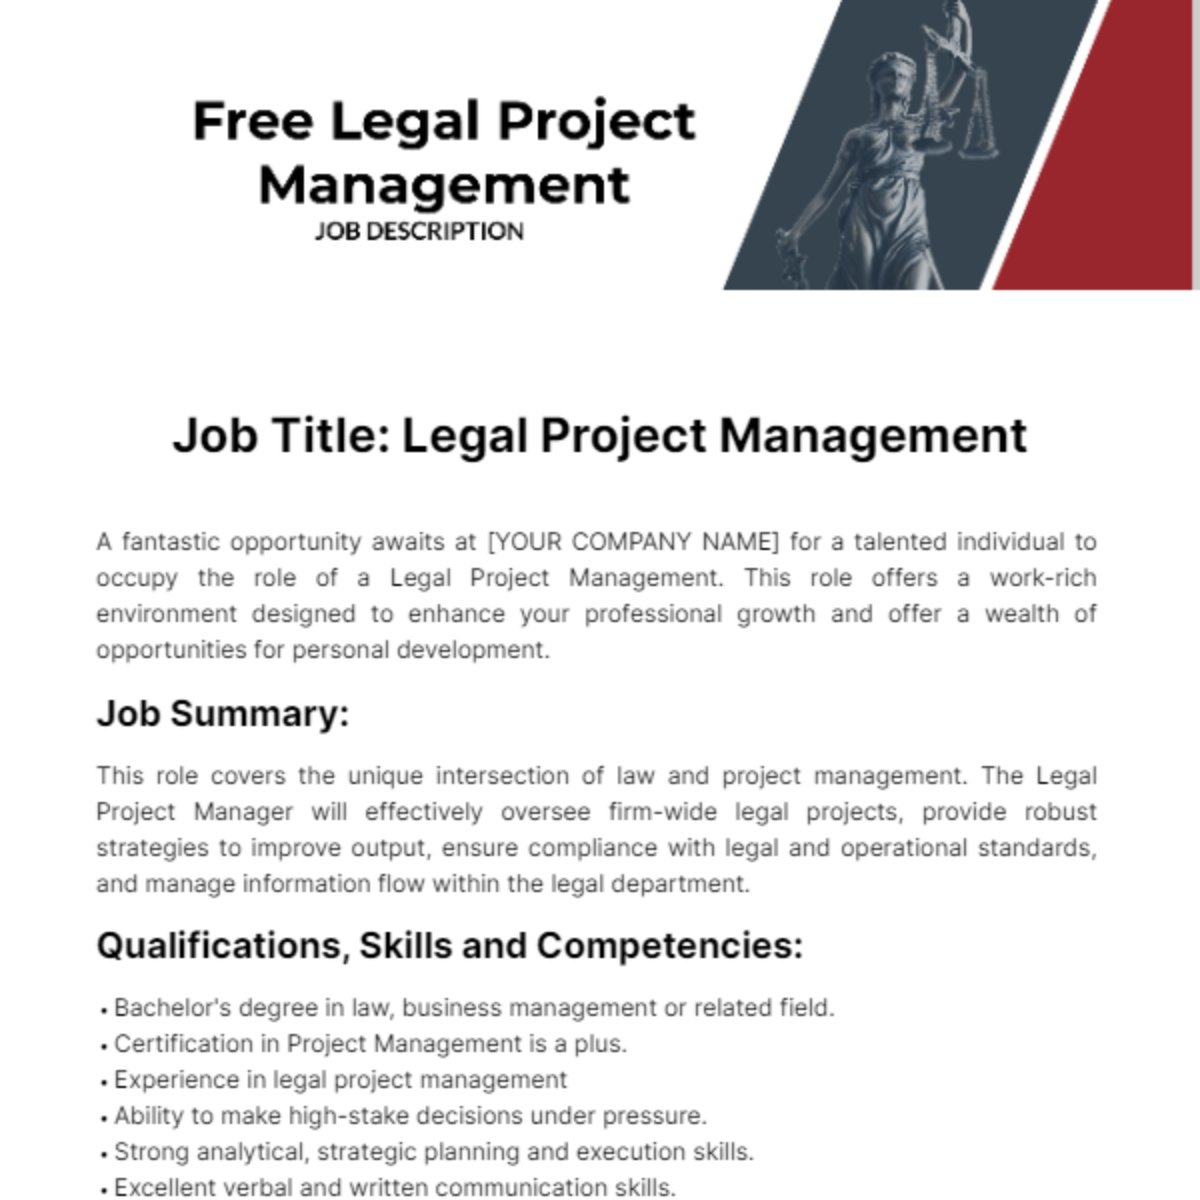 Free Legal Project Management Job Description Template